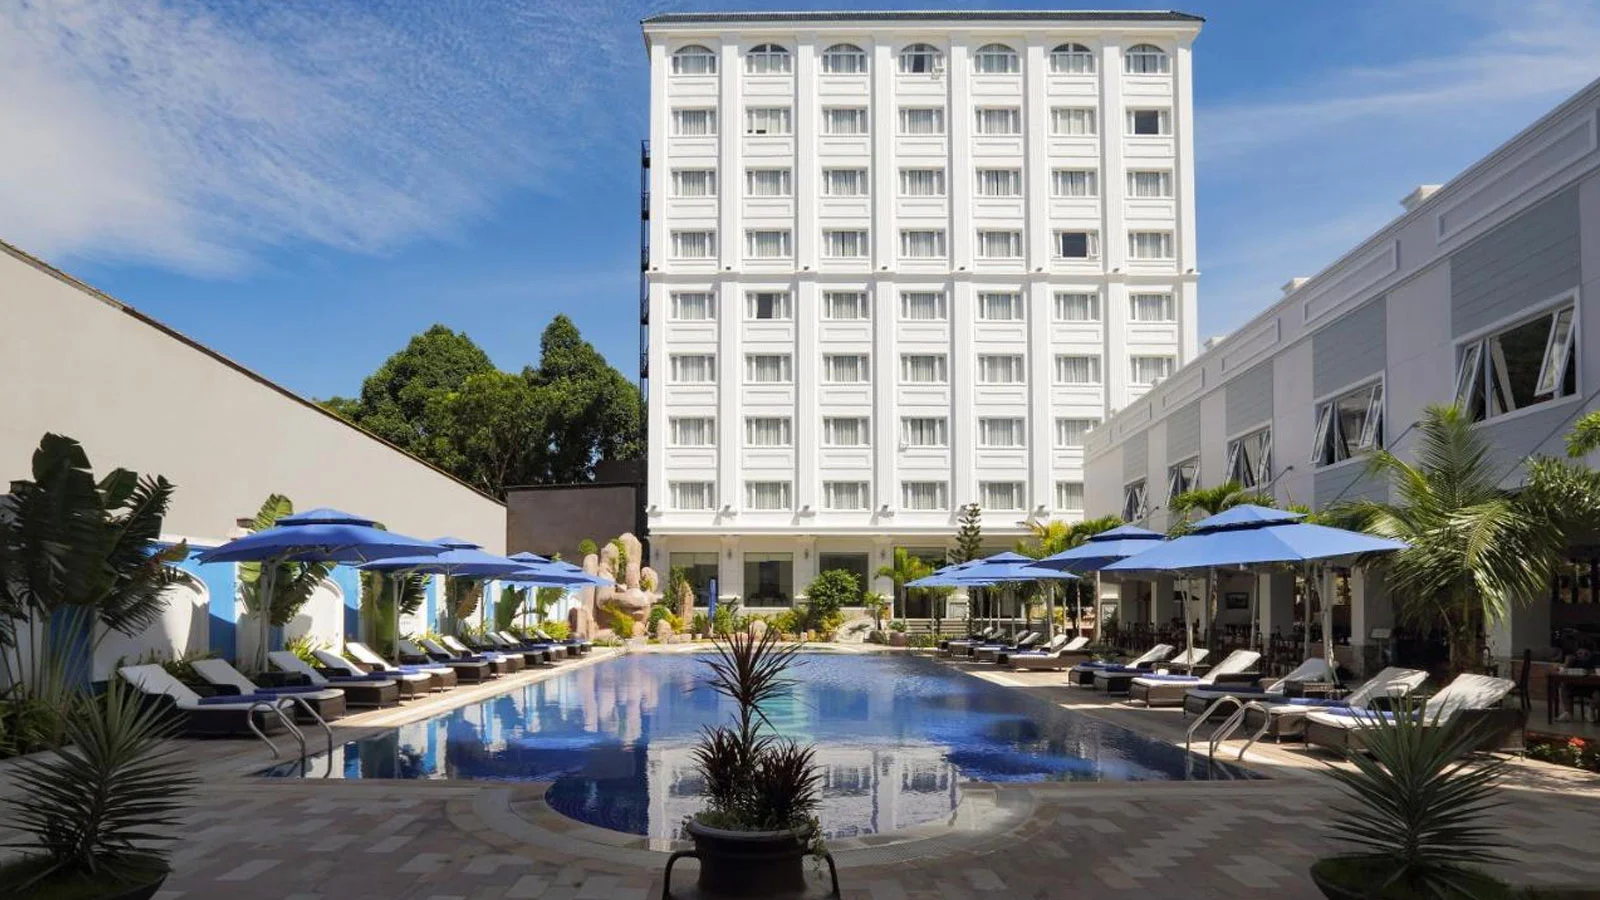 Khách sạn Ocean Pearl Hotel Phú Quốc